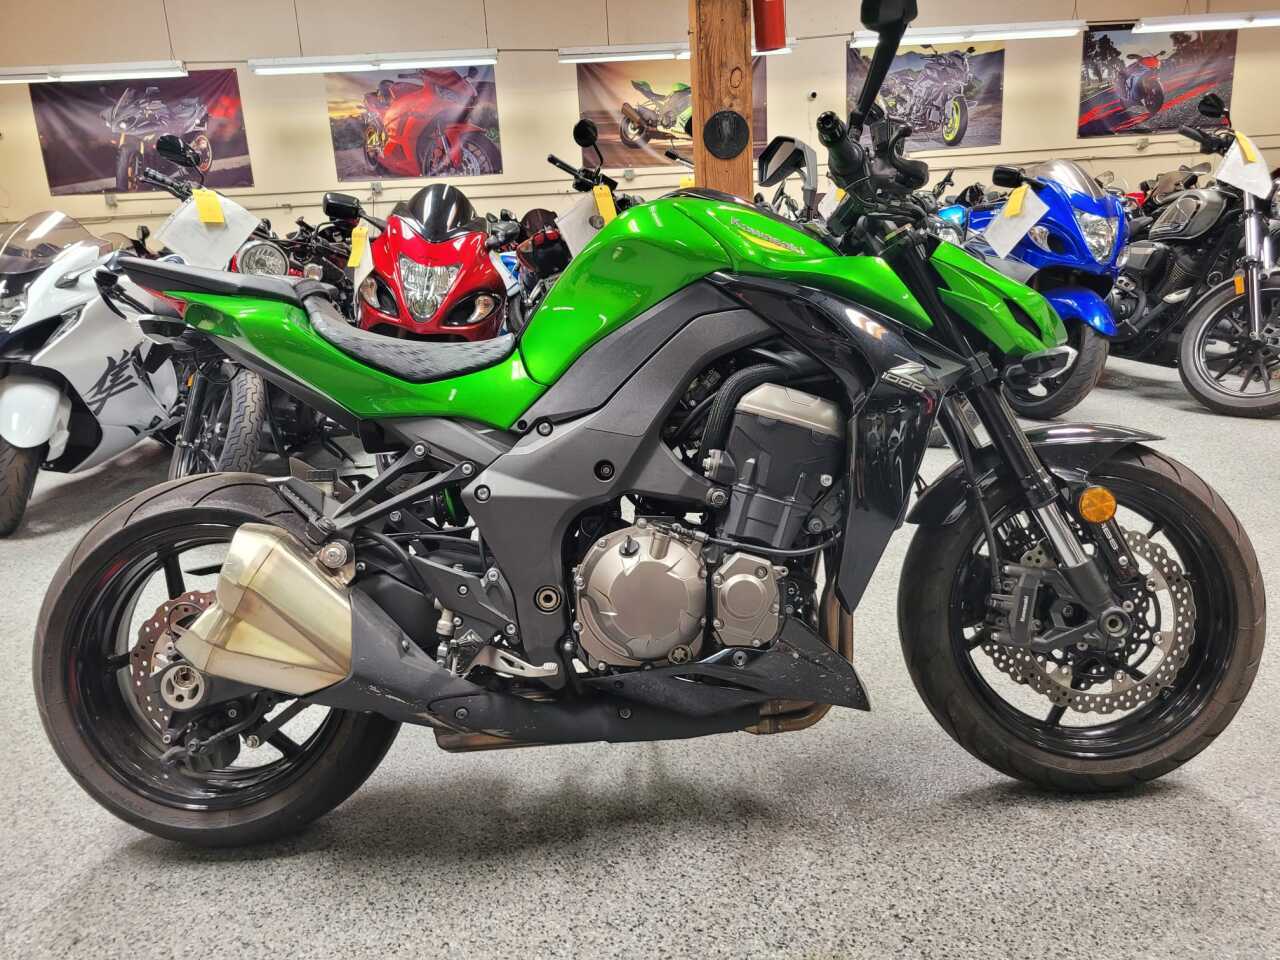 Kawasaki Z1000 For Sale In National City, CA - ®